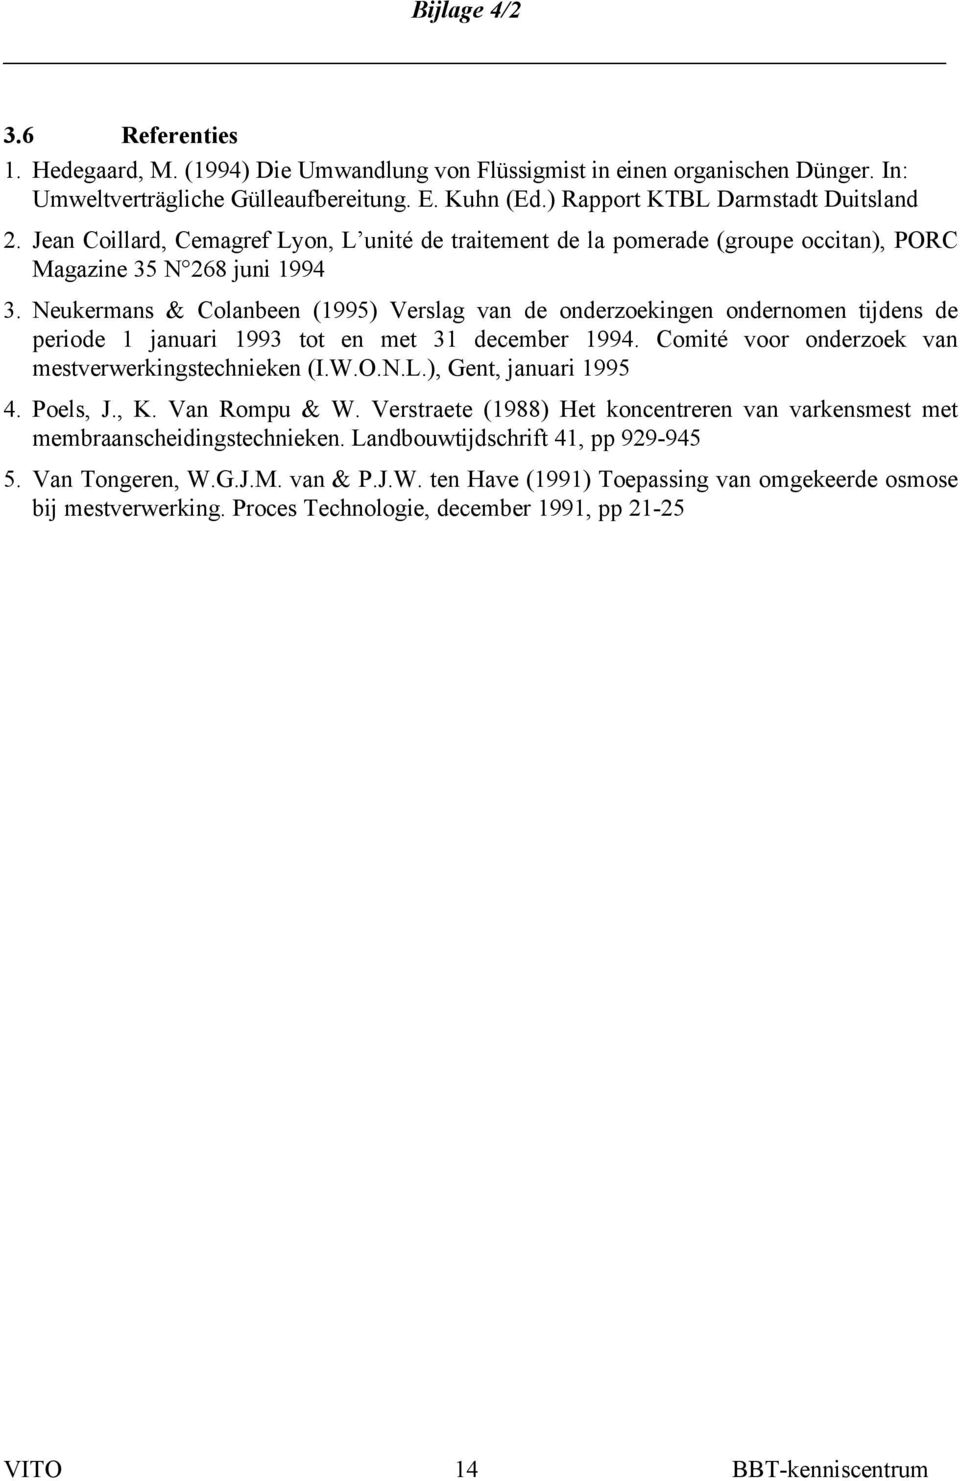 Neukermans & Colanbeen (1995) Verslag van de onderzoekingen ondernomen tijdens de periode 1 januari 1993 tot en met 31 december 1994. Comité voor onderzoek van mestverwerkingstechnieken (I.W.O.N.L.